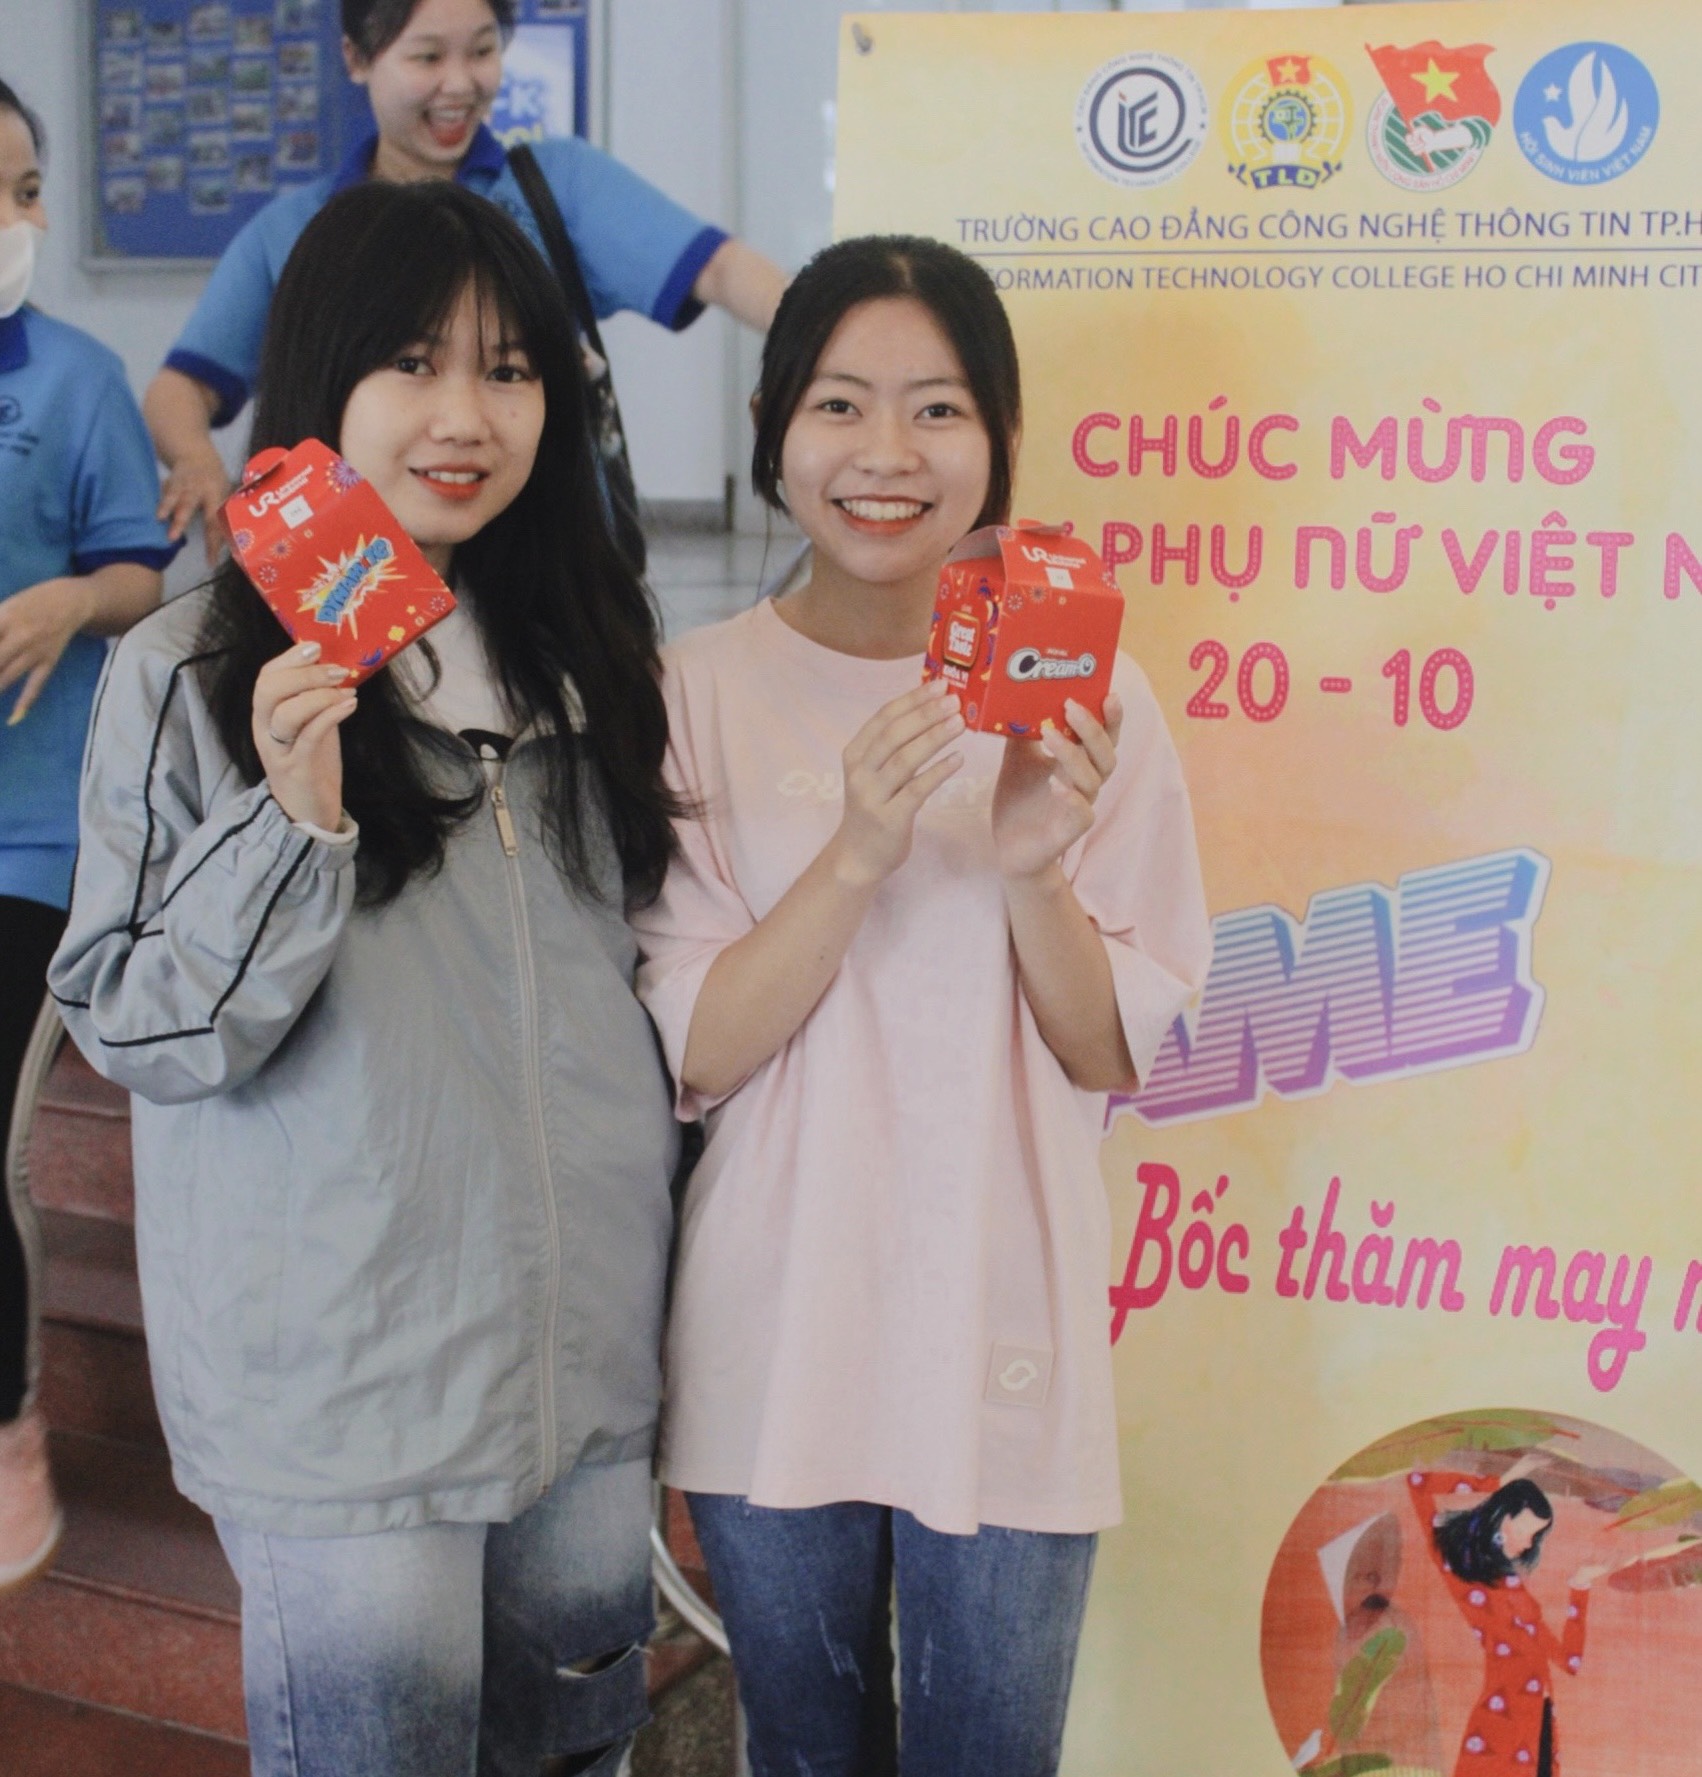 Nữ sinh ITC hào hứng tham gia minigame trong ngày Phụ nữ Việt Nam 20.10